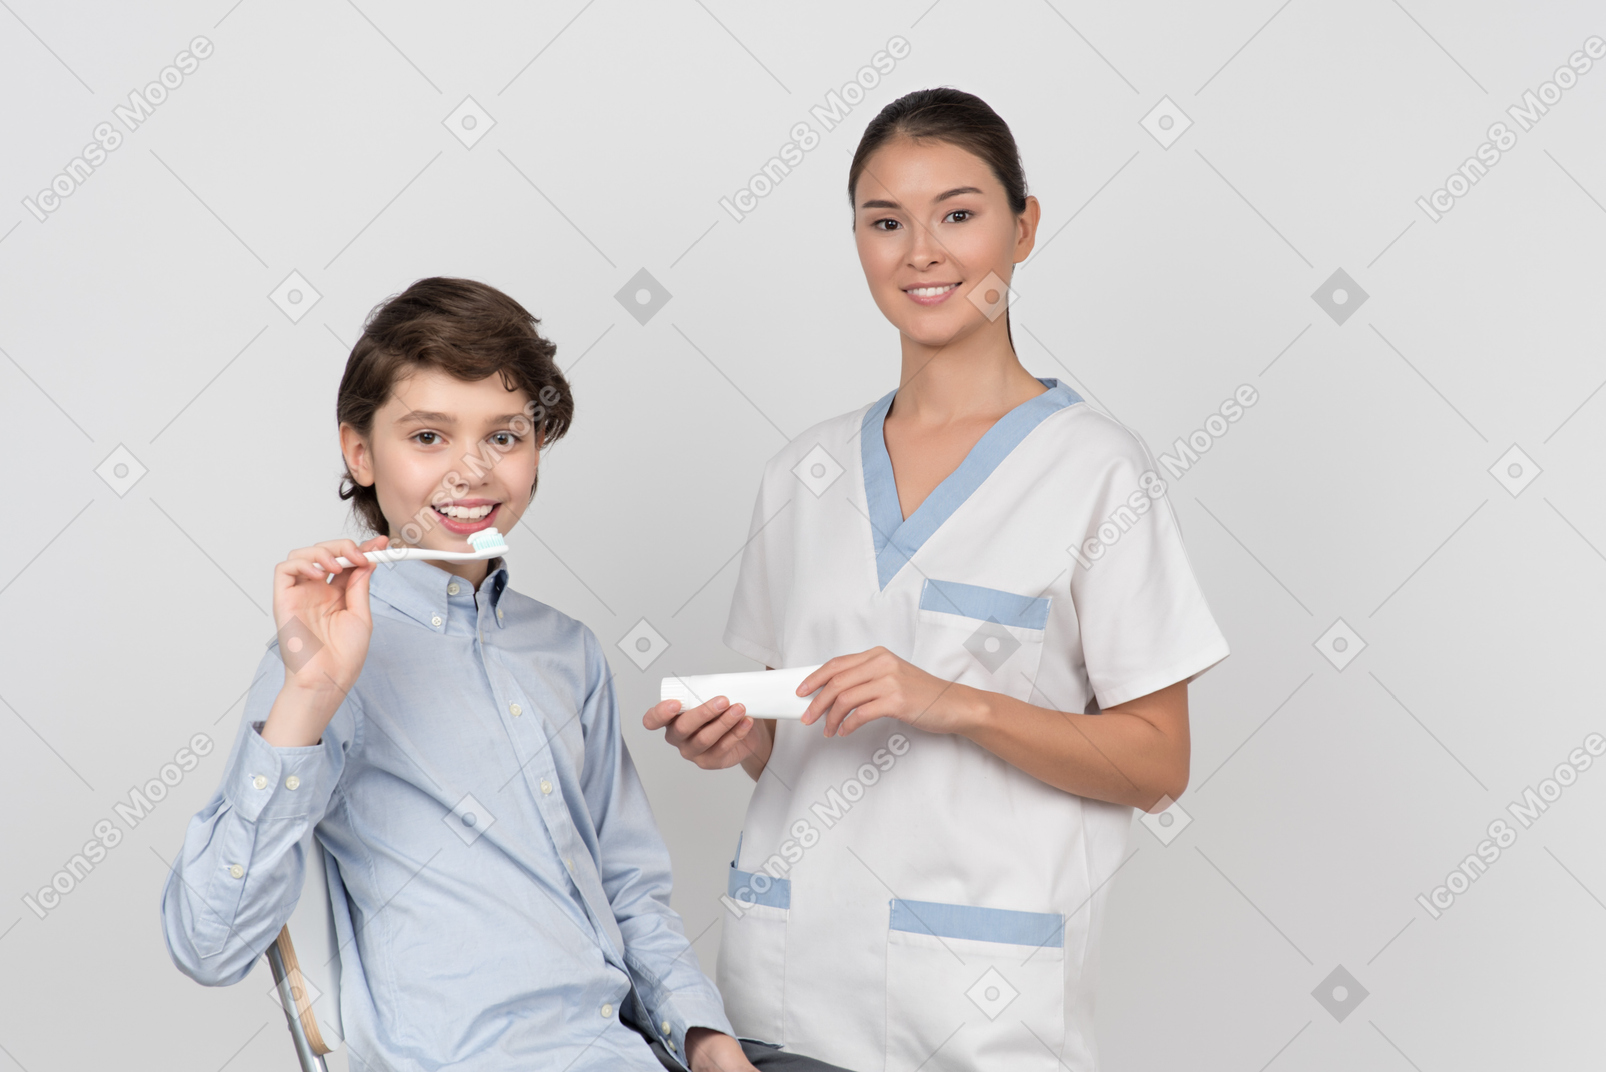 Kind junge patient hält zahnbürste und zahnärztin hält zahnpasta